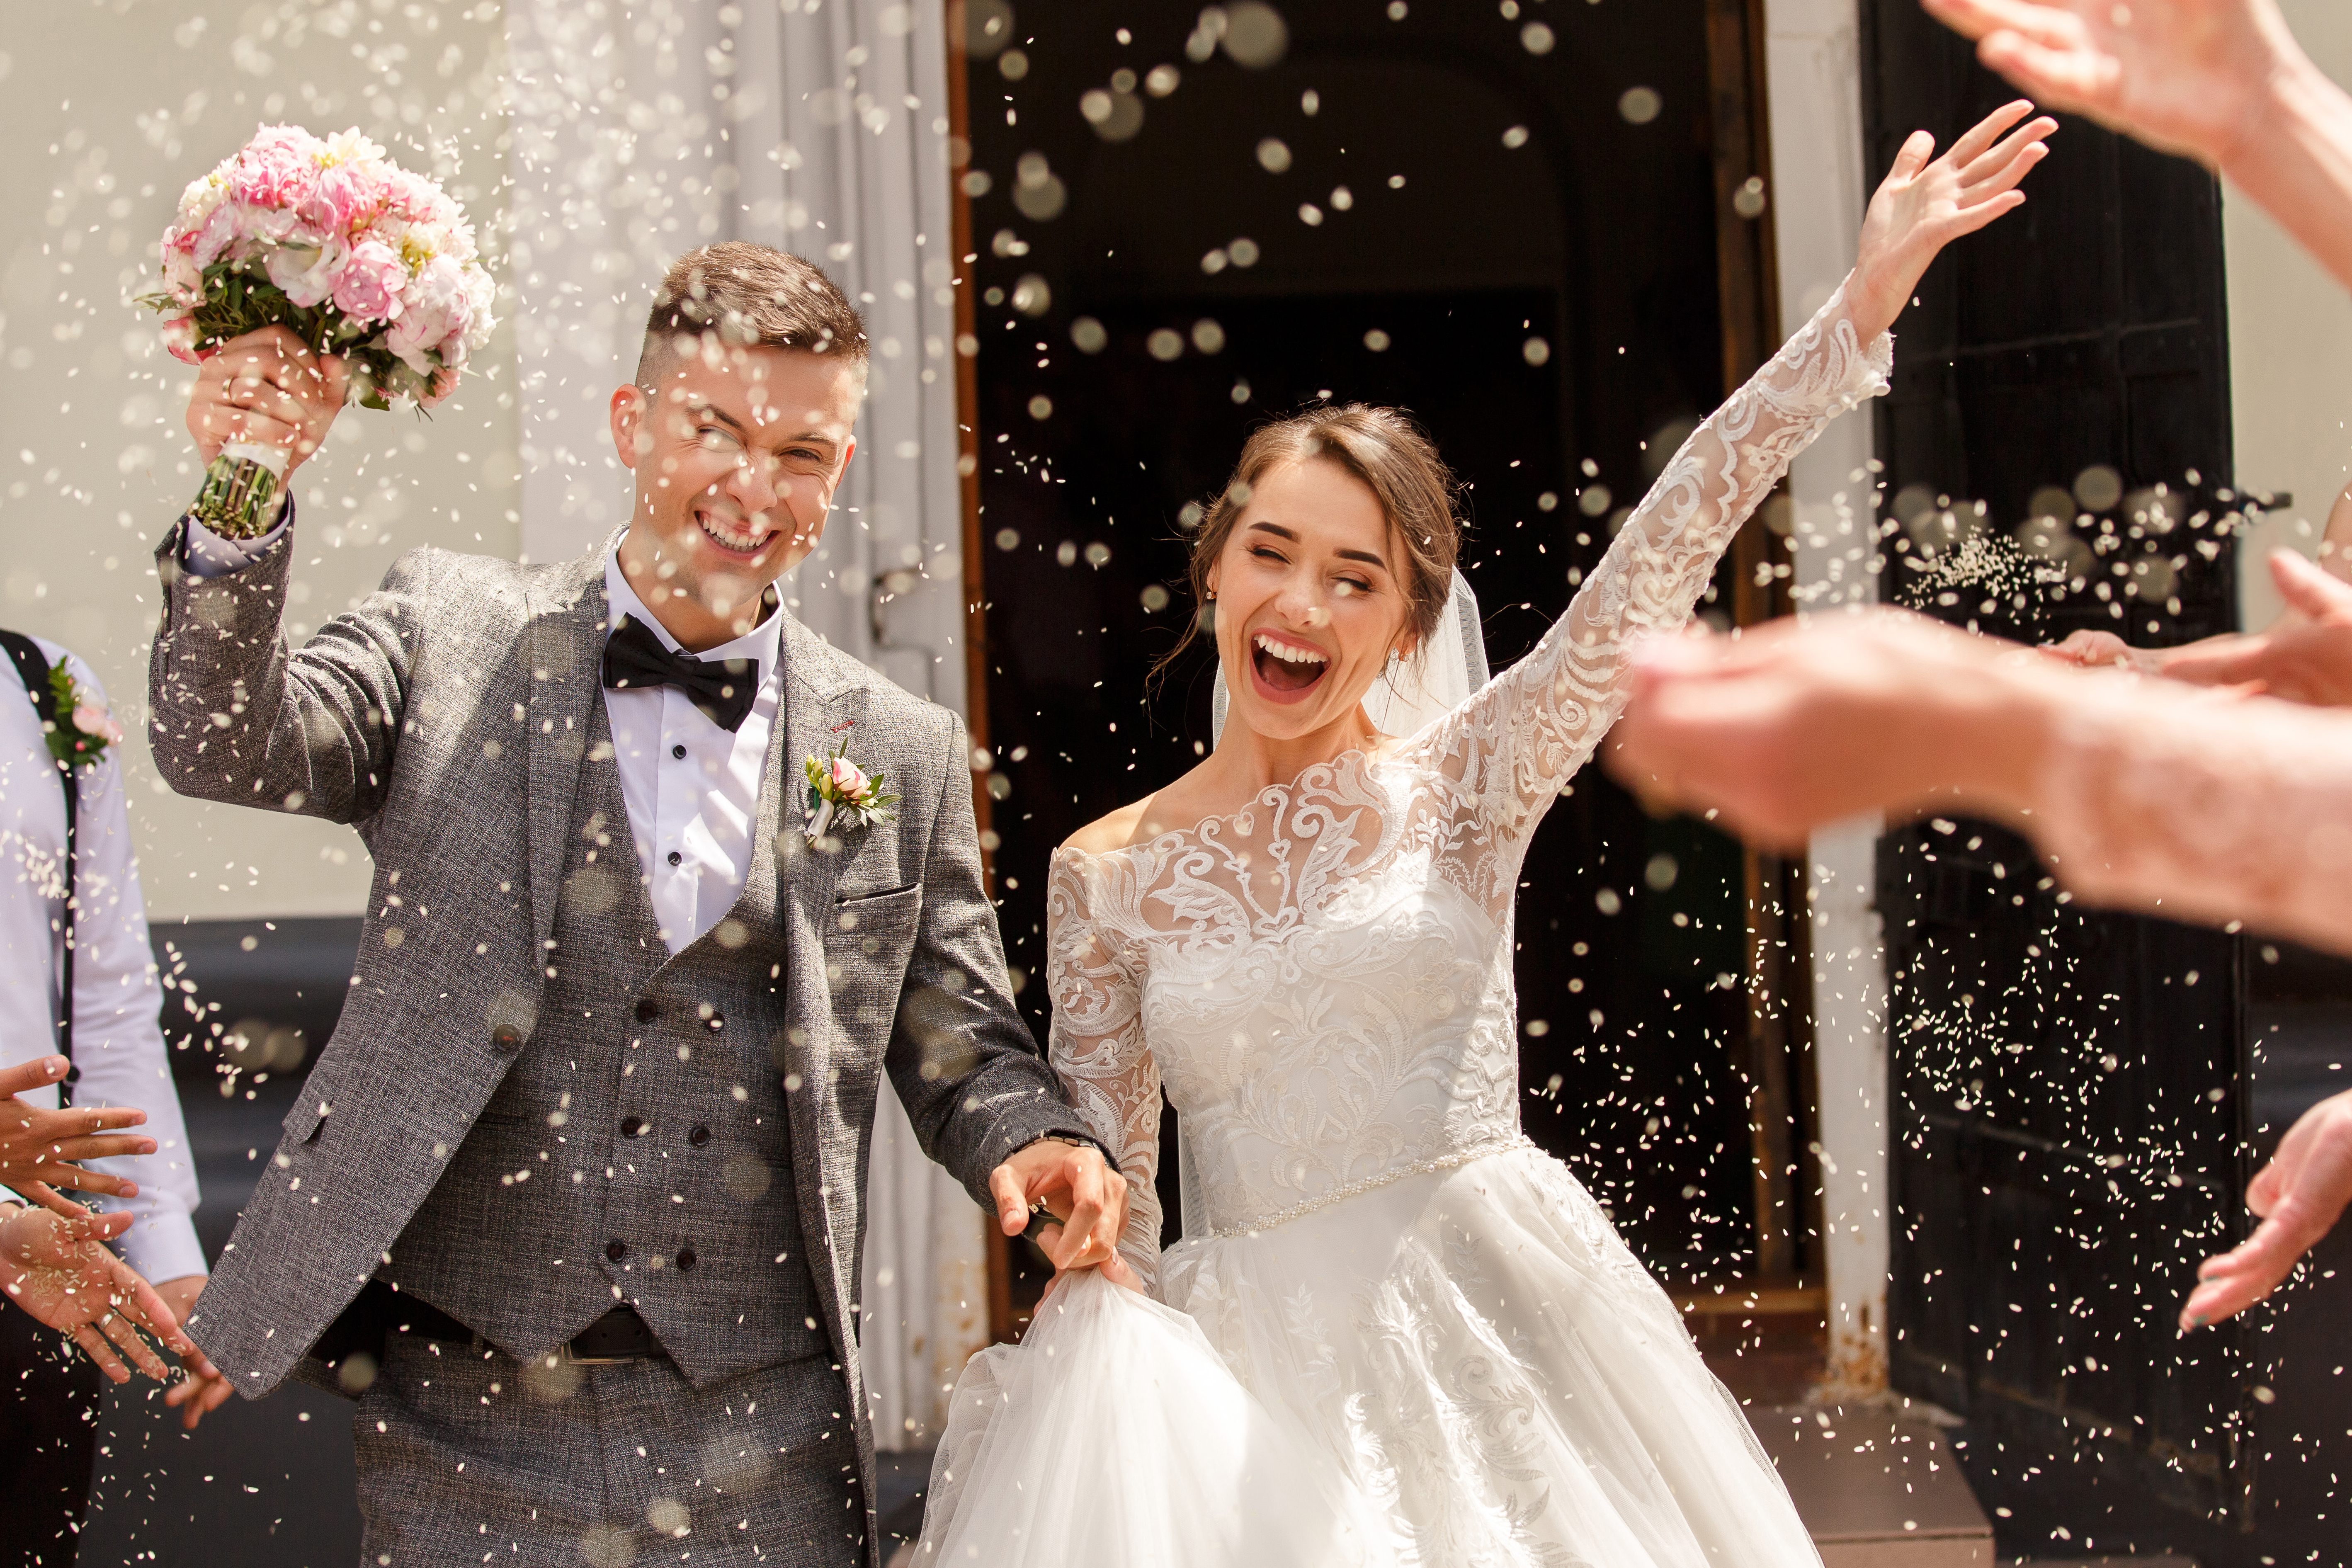 Des mariés heureux lors du mariage | Source : Shutterstock